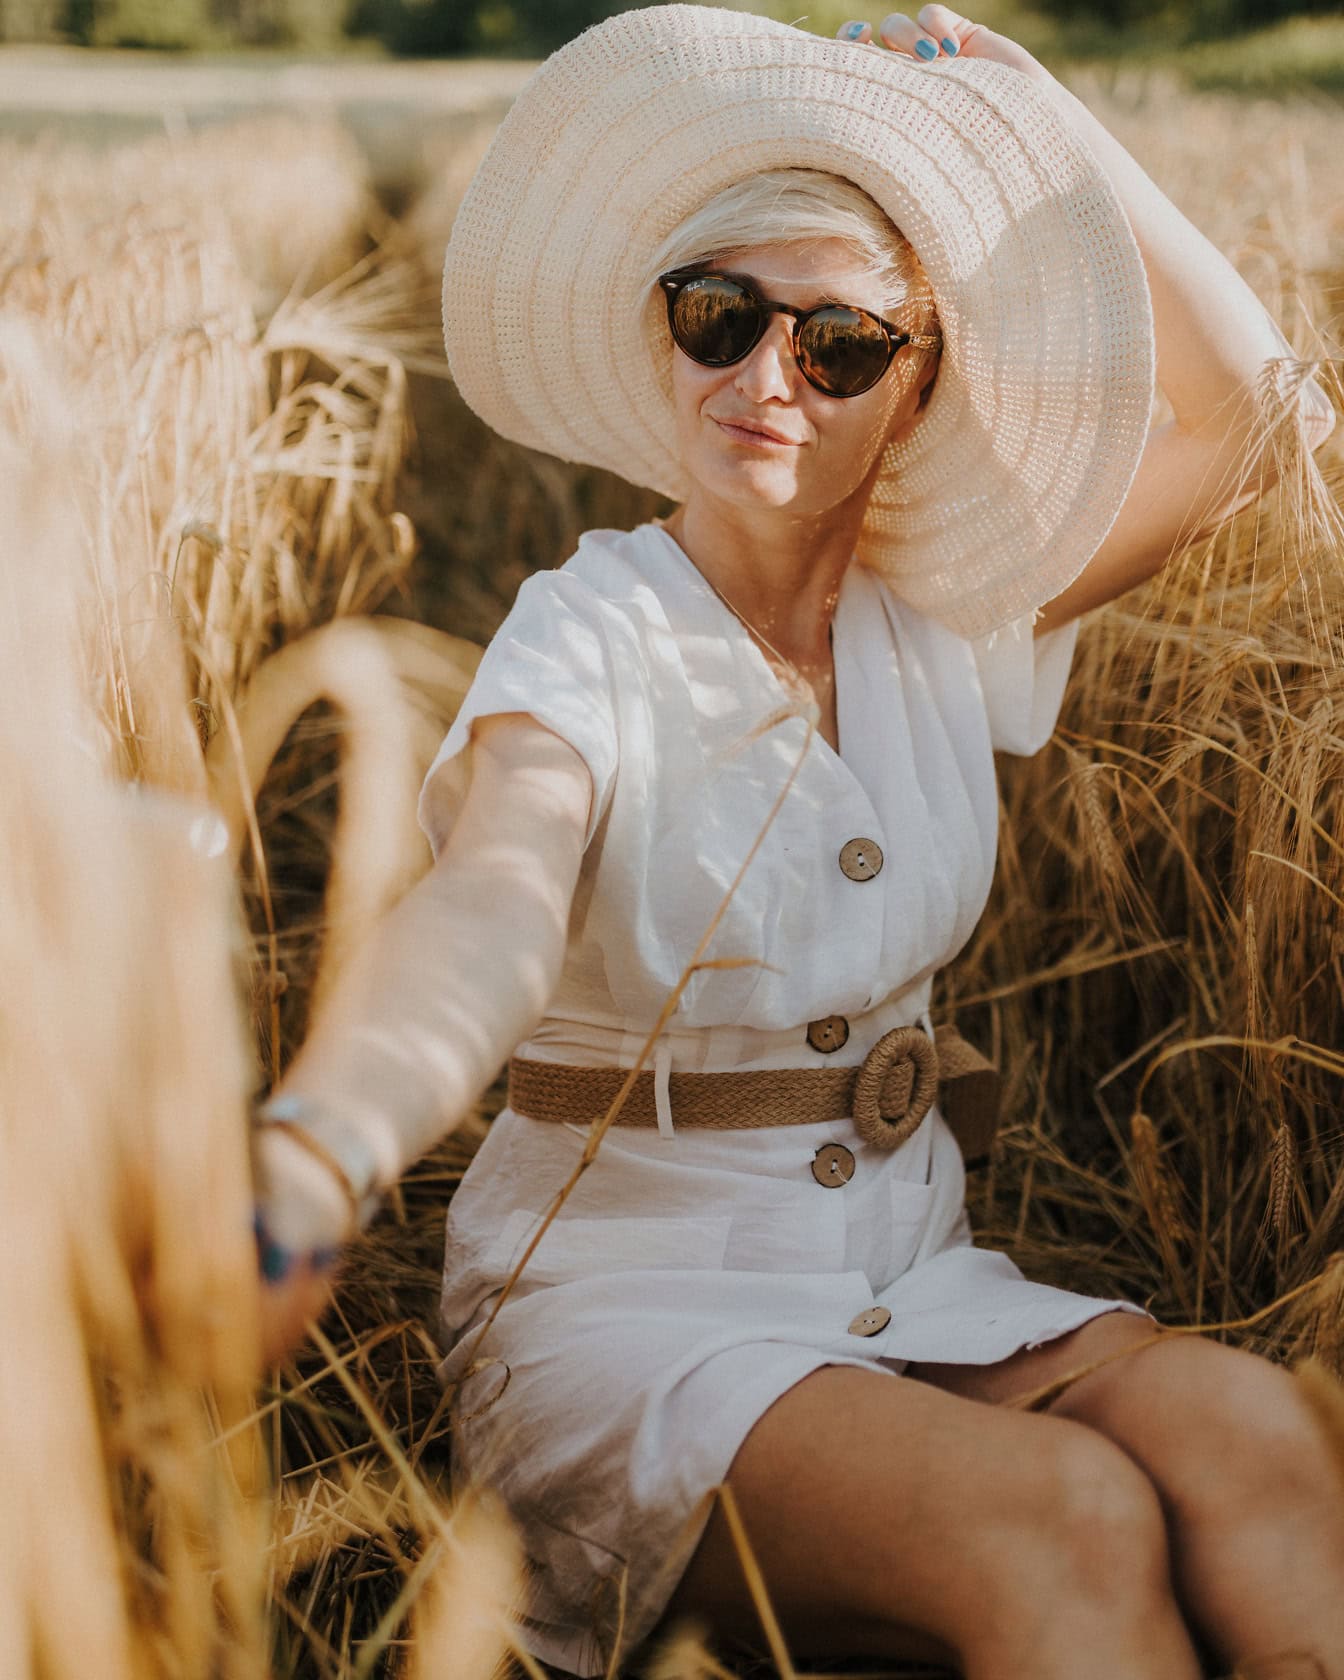 Người phụ nữ tóc vàng xinh đẹp quyến rũ với mũ và kính râm tắm nắng trên cánh đồng lúa mì vào cuối mùa hè